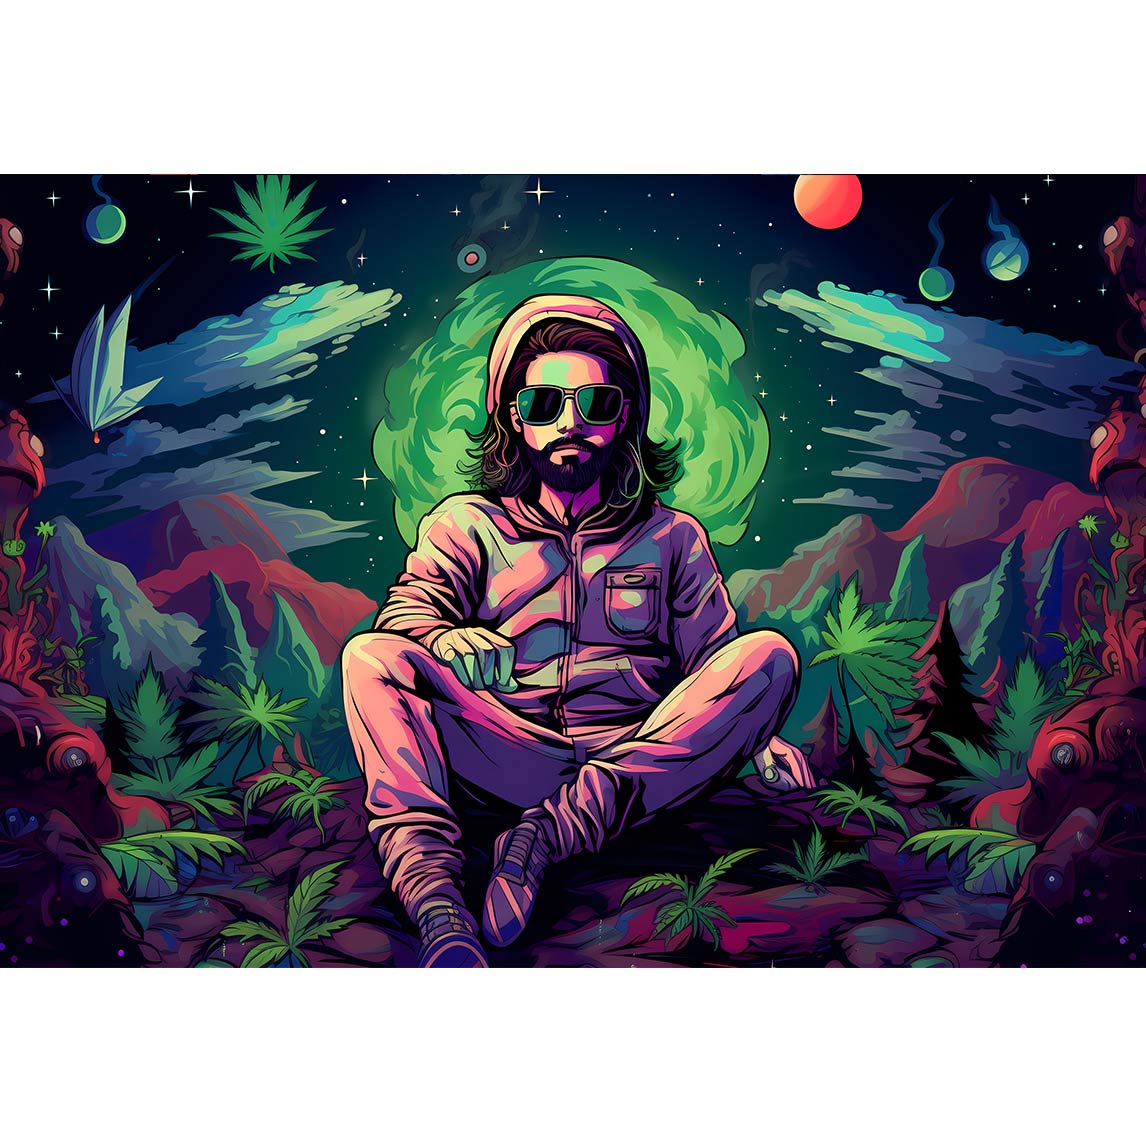 Ein Mann umgeben von Marihuana pflanzen auf einem fremden Planeten 